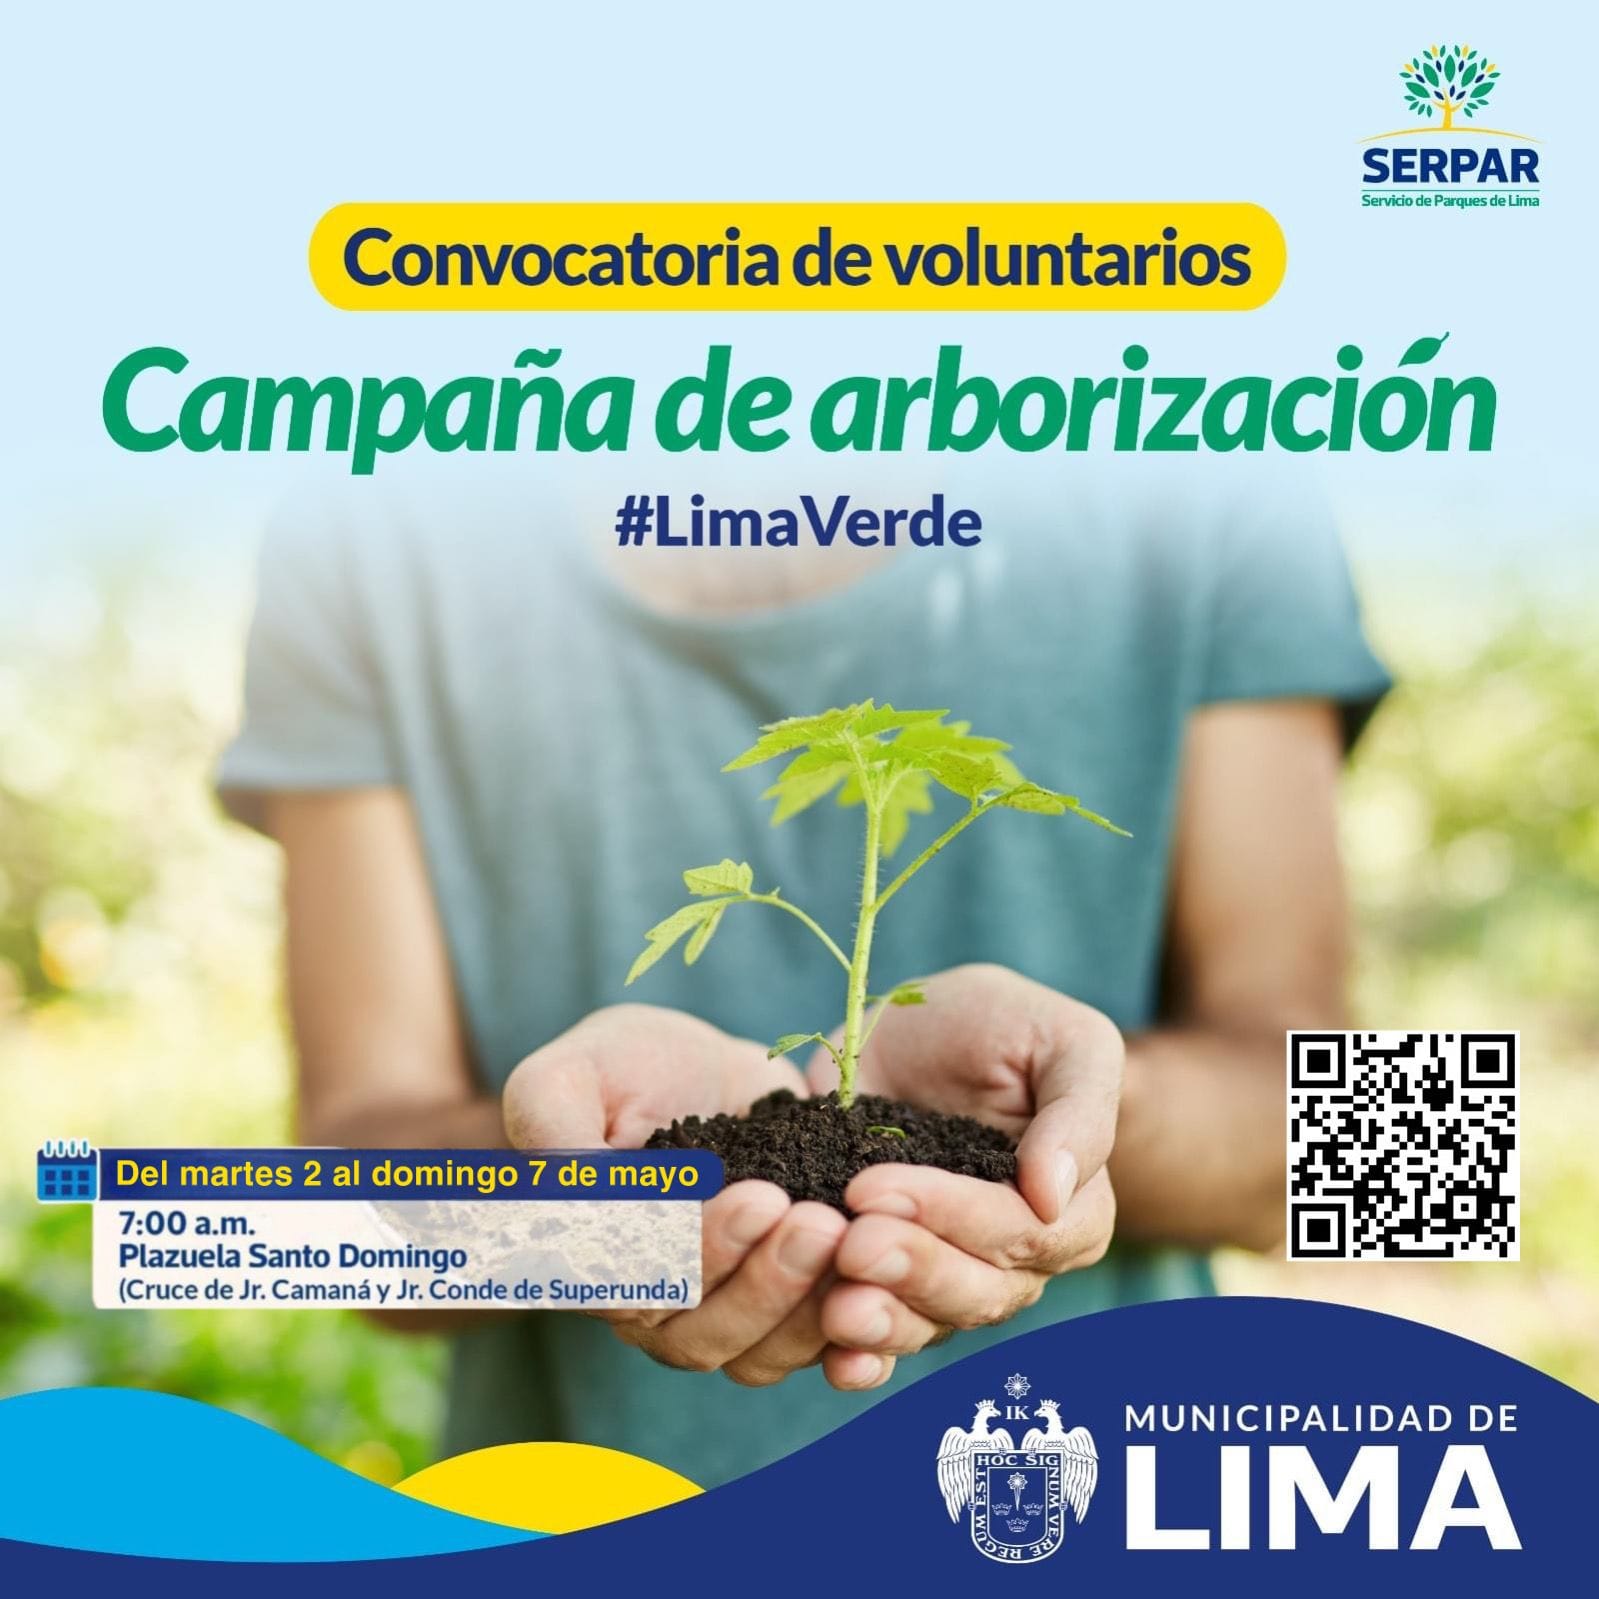 Convocatoria de voluntarios para Campaña de arborización Lima Verde